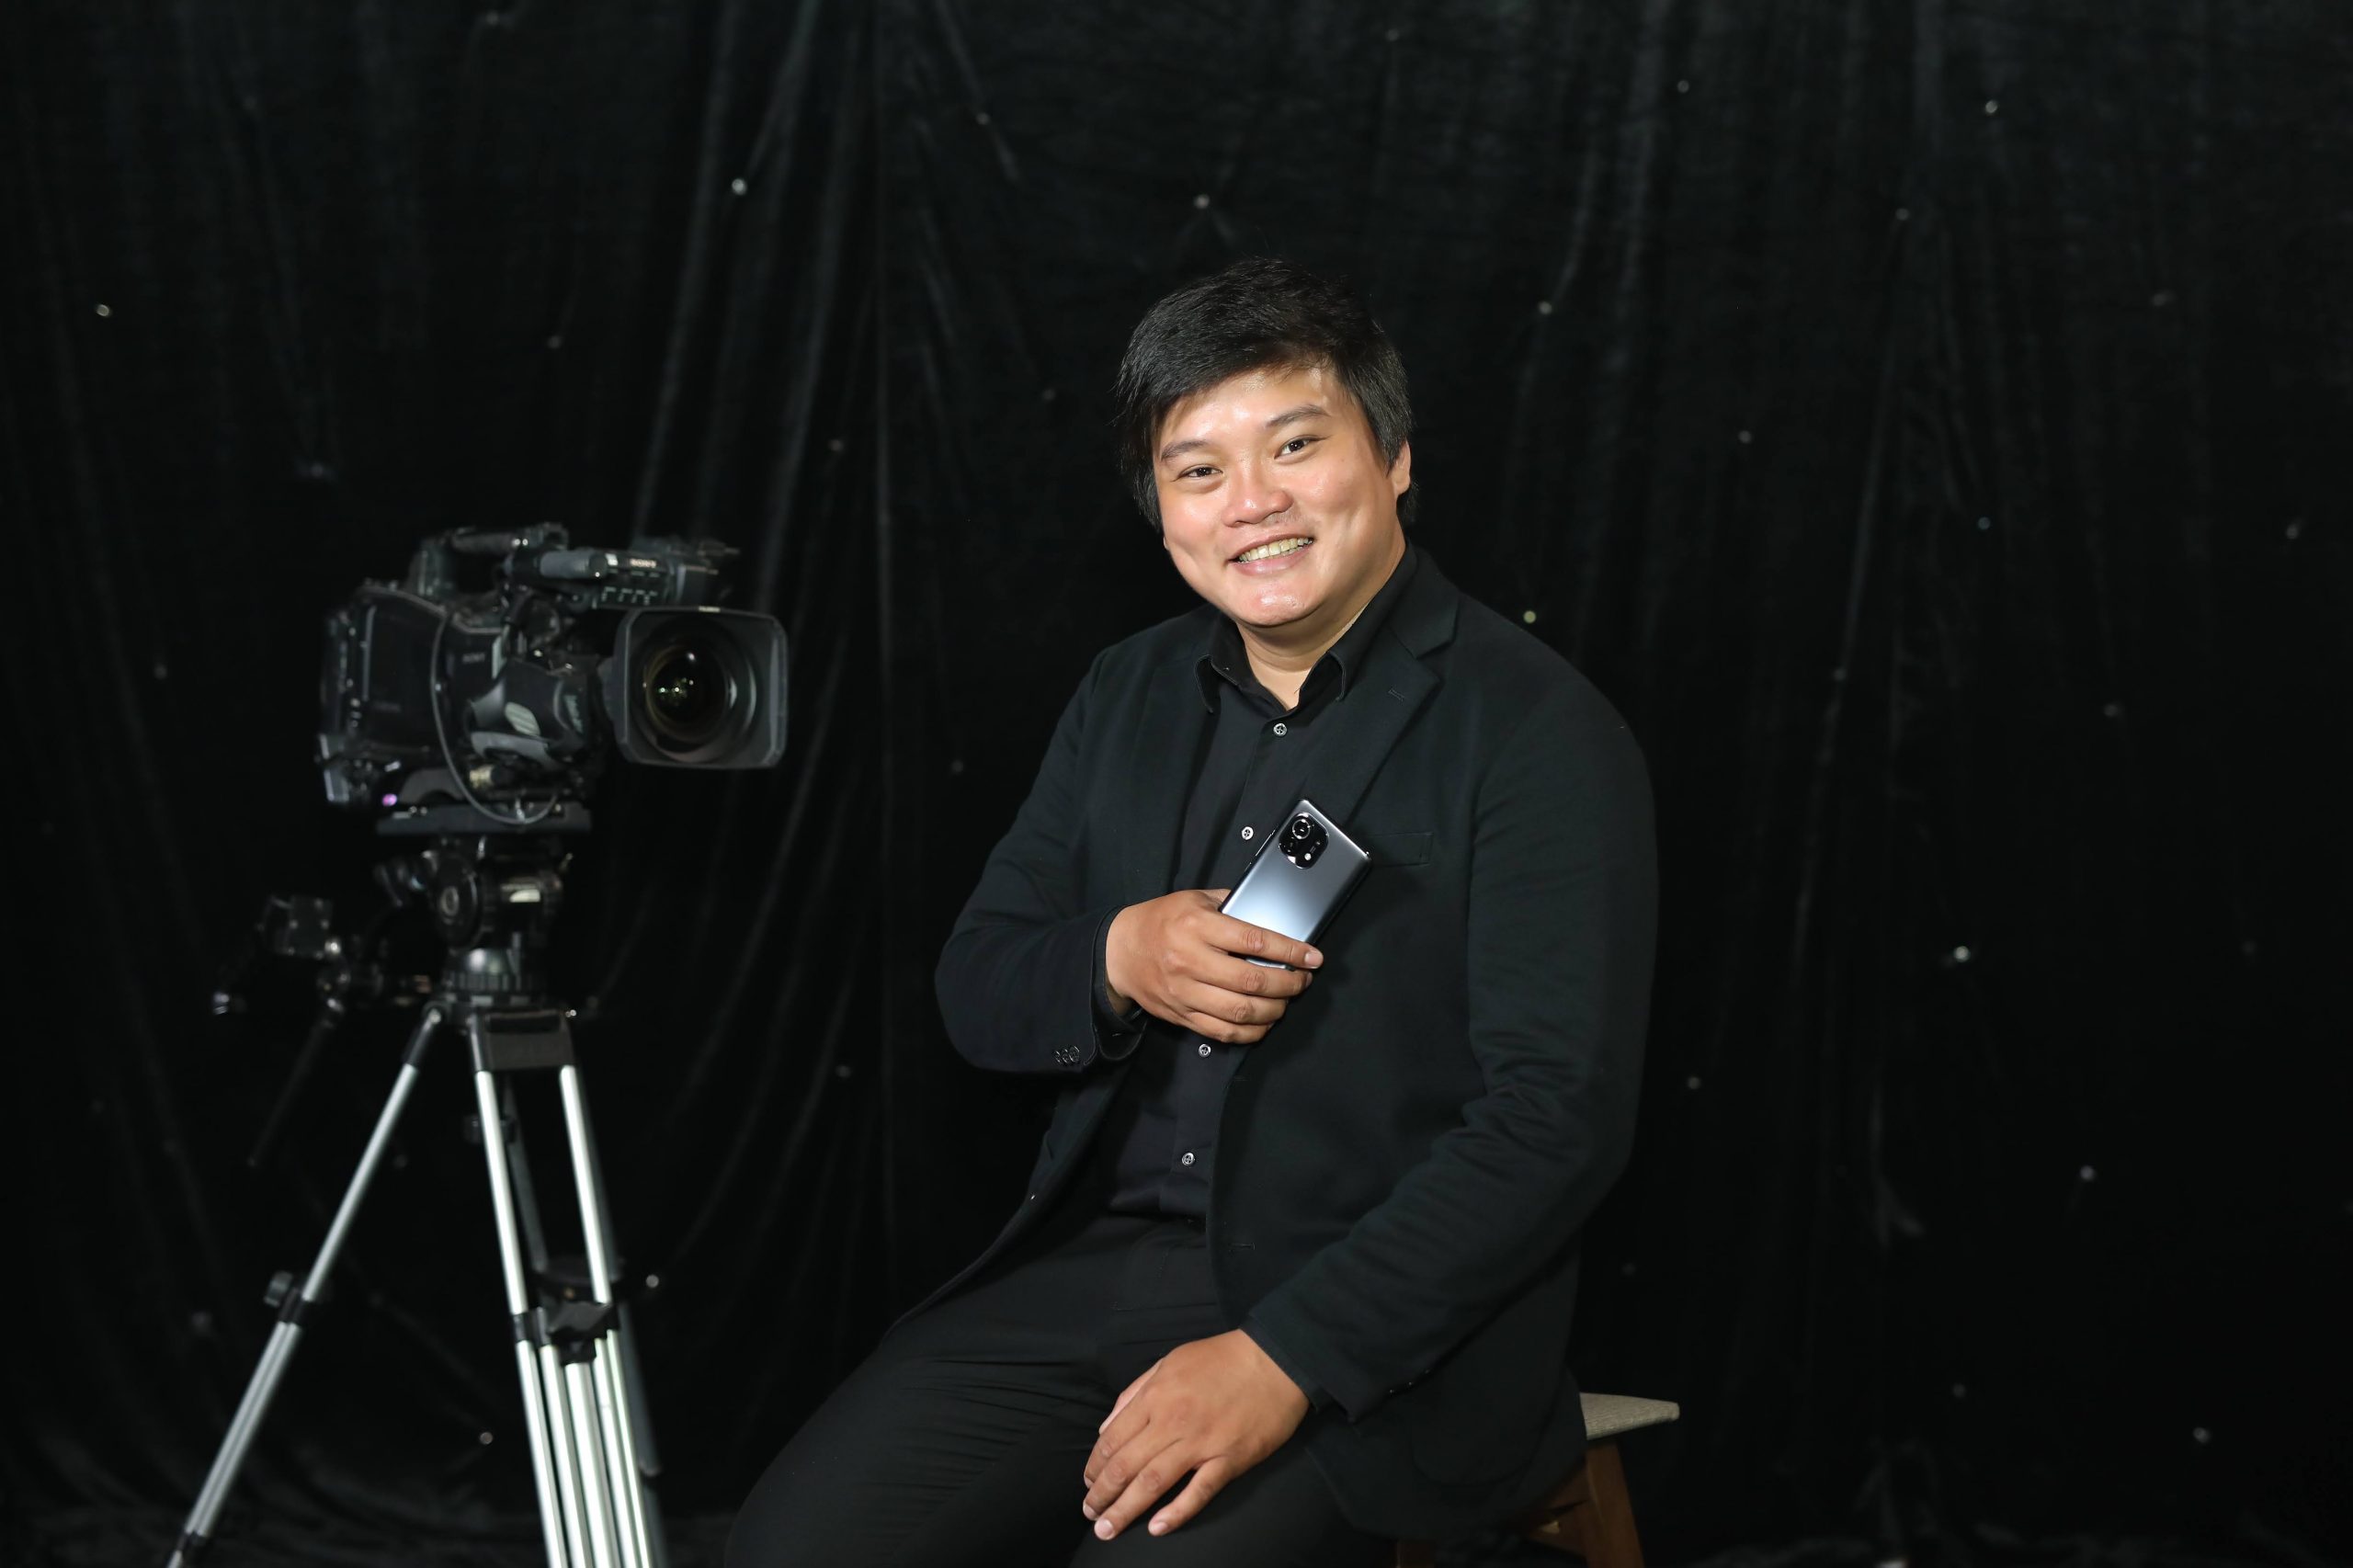 Đạo diễn phim “Ròm” Trần Thanh Huy chính thức ra mắt bộ phim ngắn được quay bằng điện thoại, kết hợp hành động và lãng mạn